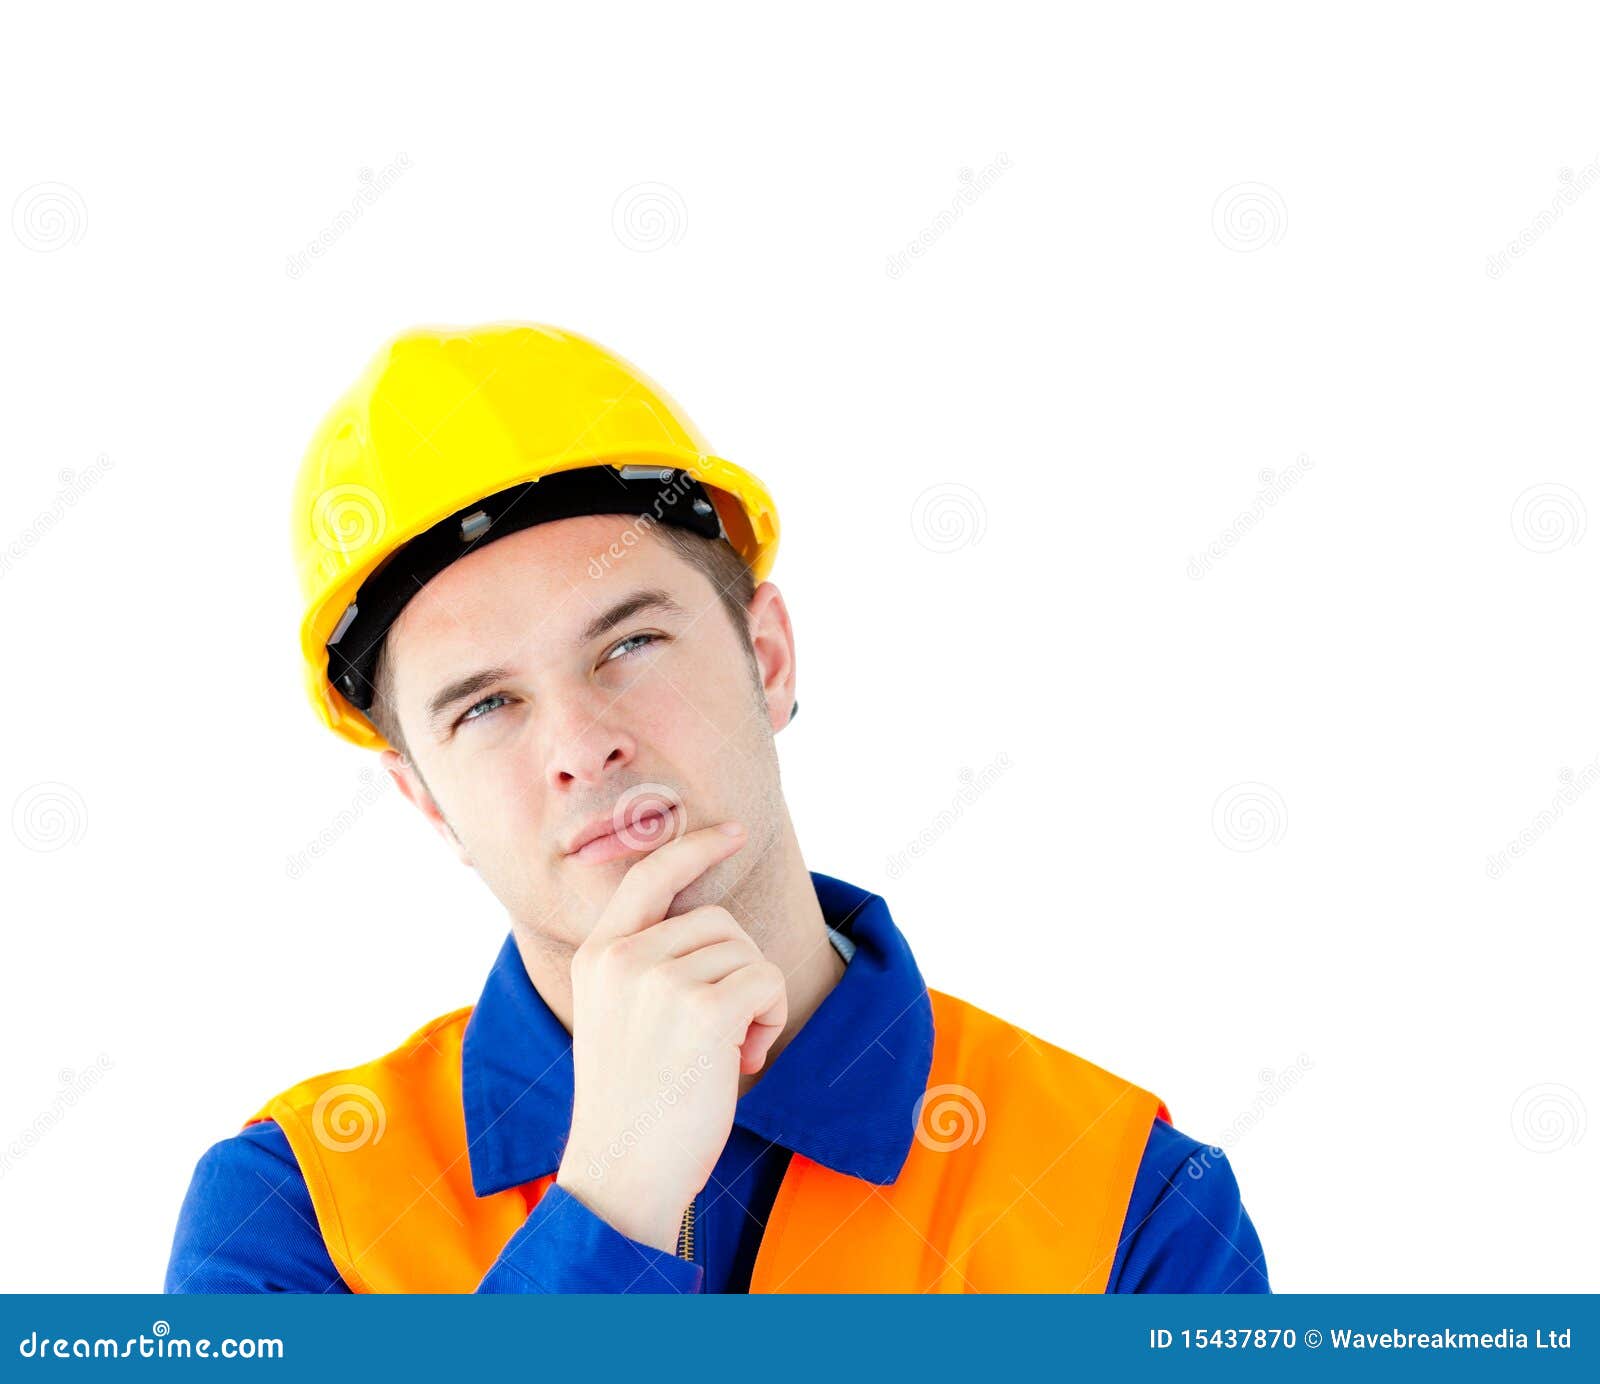 trabajador-no-manual-pensativo-con-un-sombrero-duro-15437870.jpg